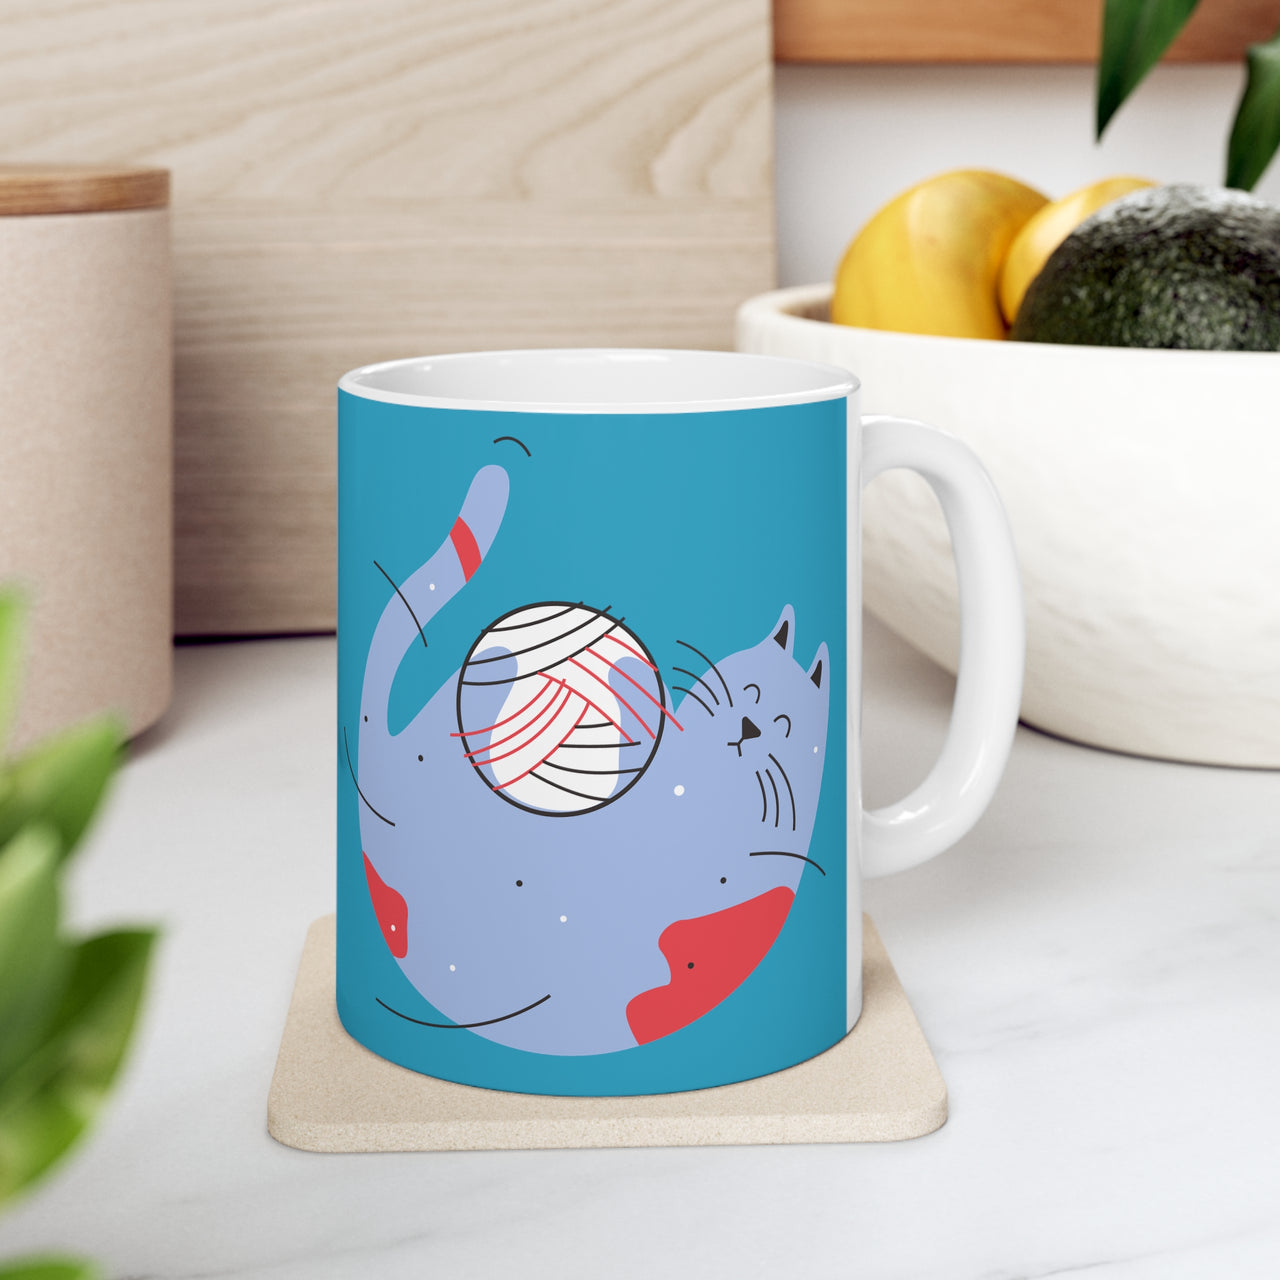 Cat Playing With Yarn Ball Ceramic Mug 11oz